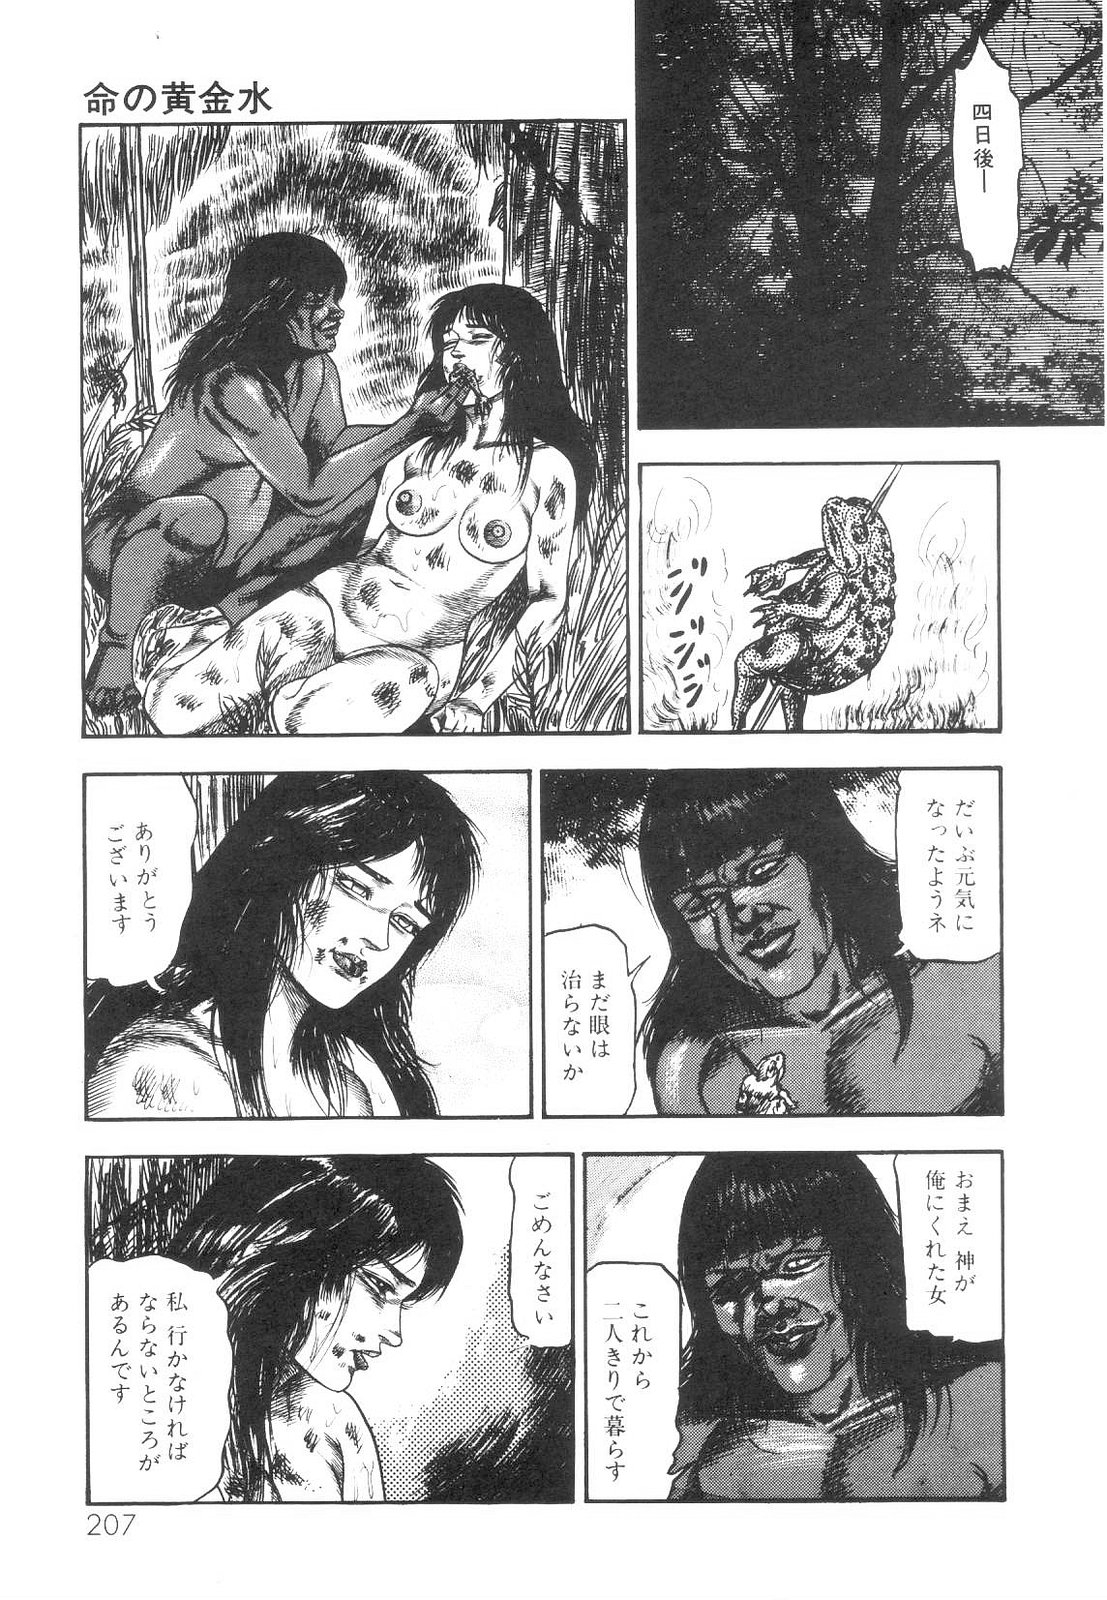 [Sanjou Tomomi] Shiro no Mokushiroku Vol. 1 - Sei Shojo Shion no Shou 207